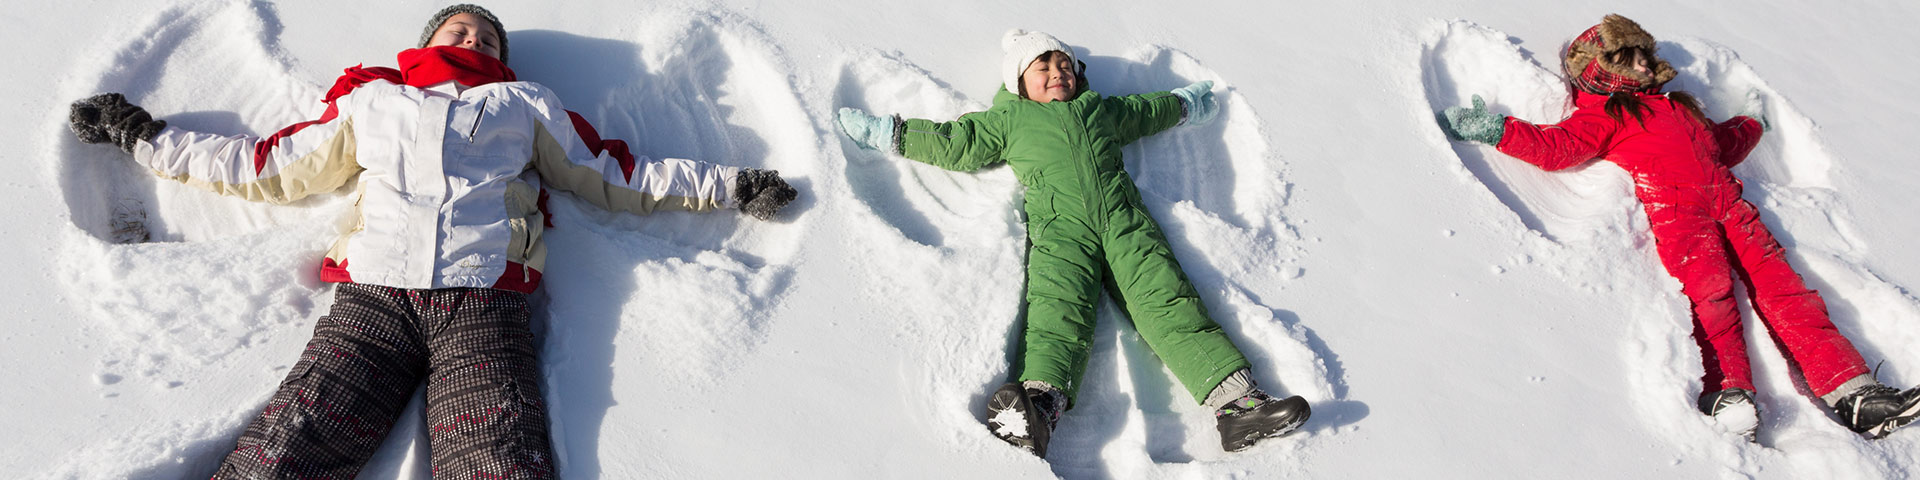 Des enfants font des anges dans la neige, dans le parc national Elk Island